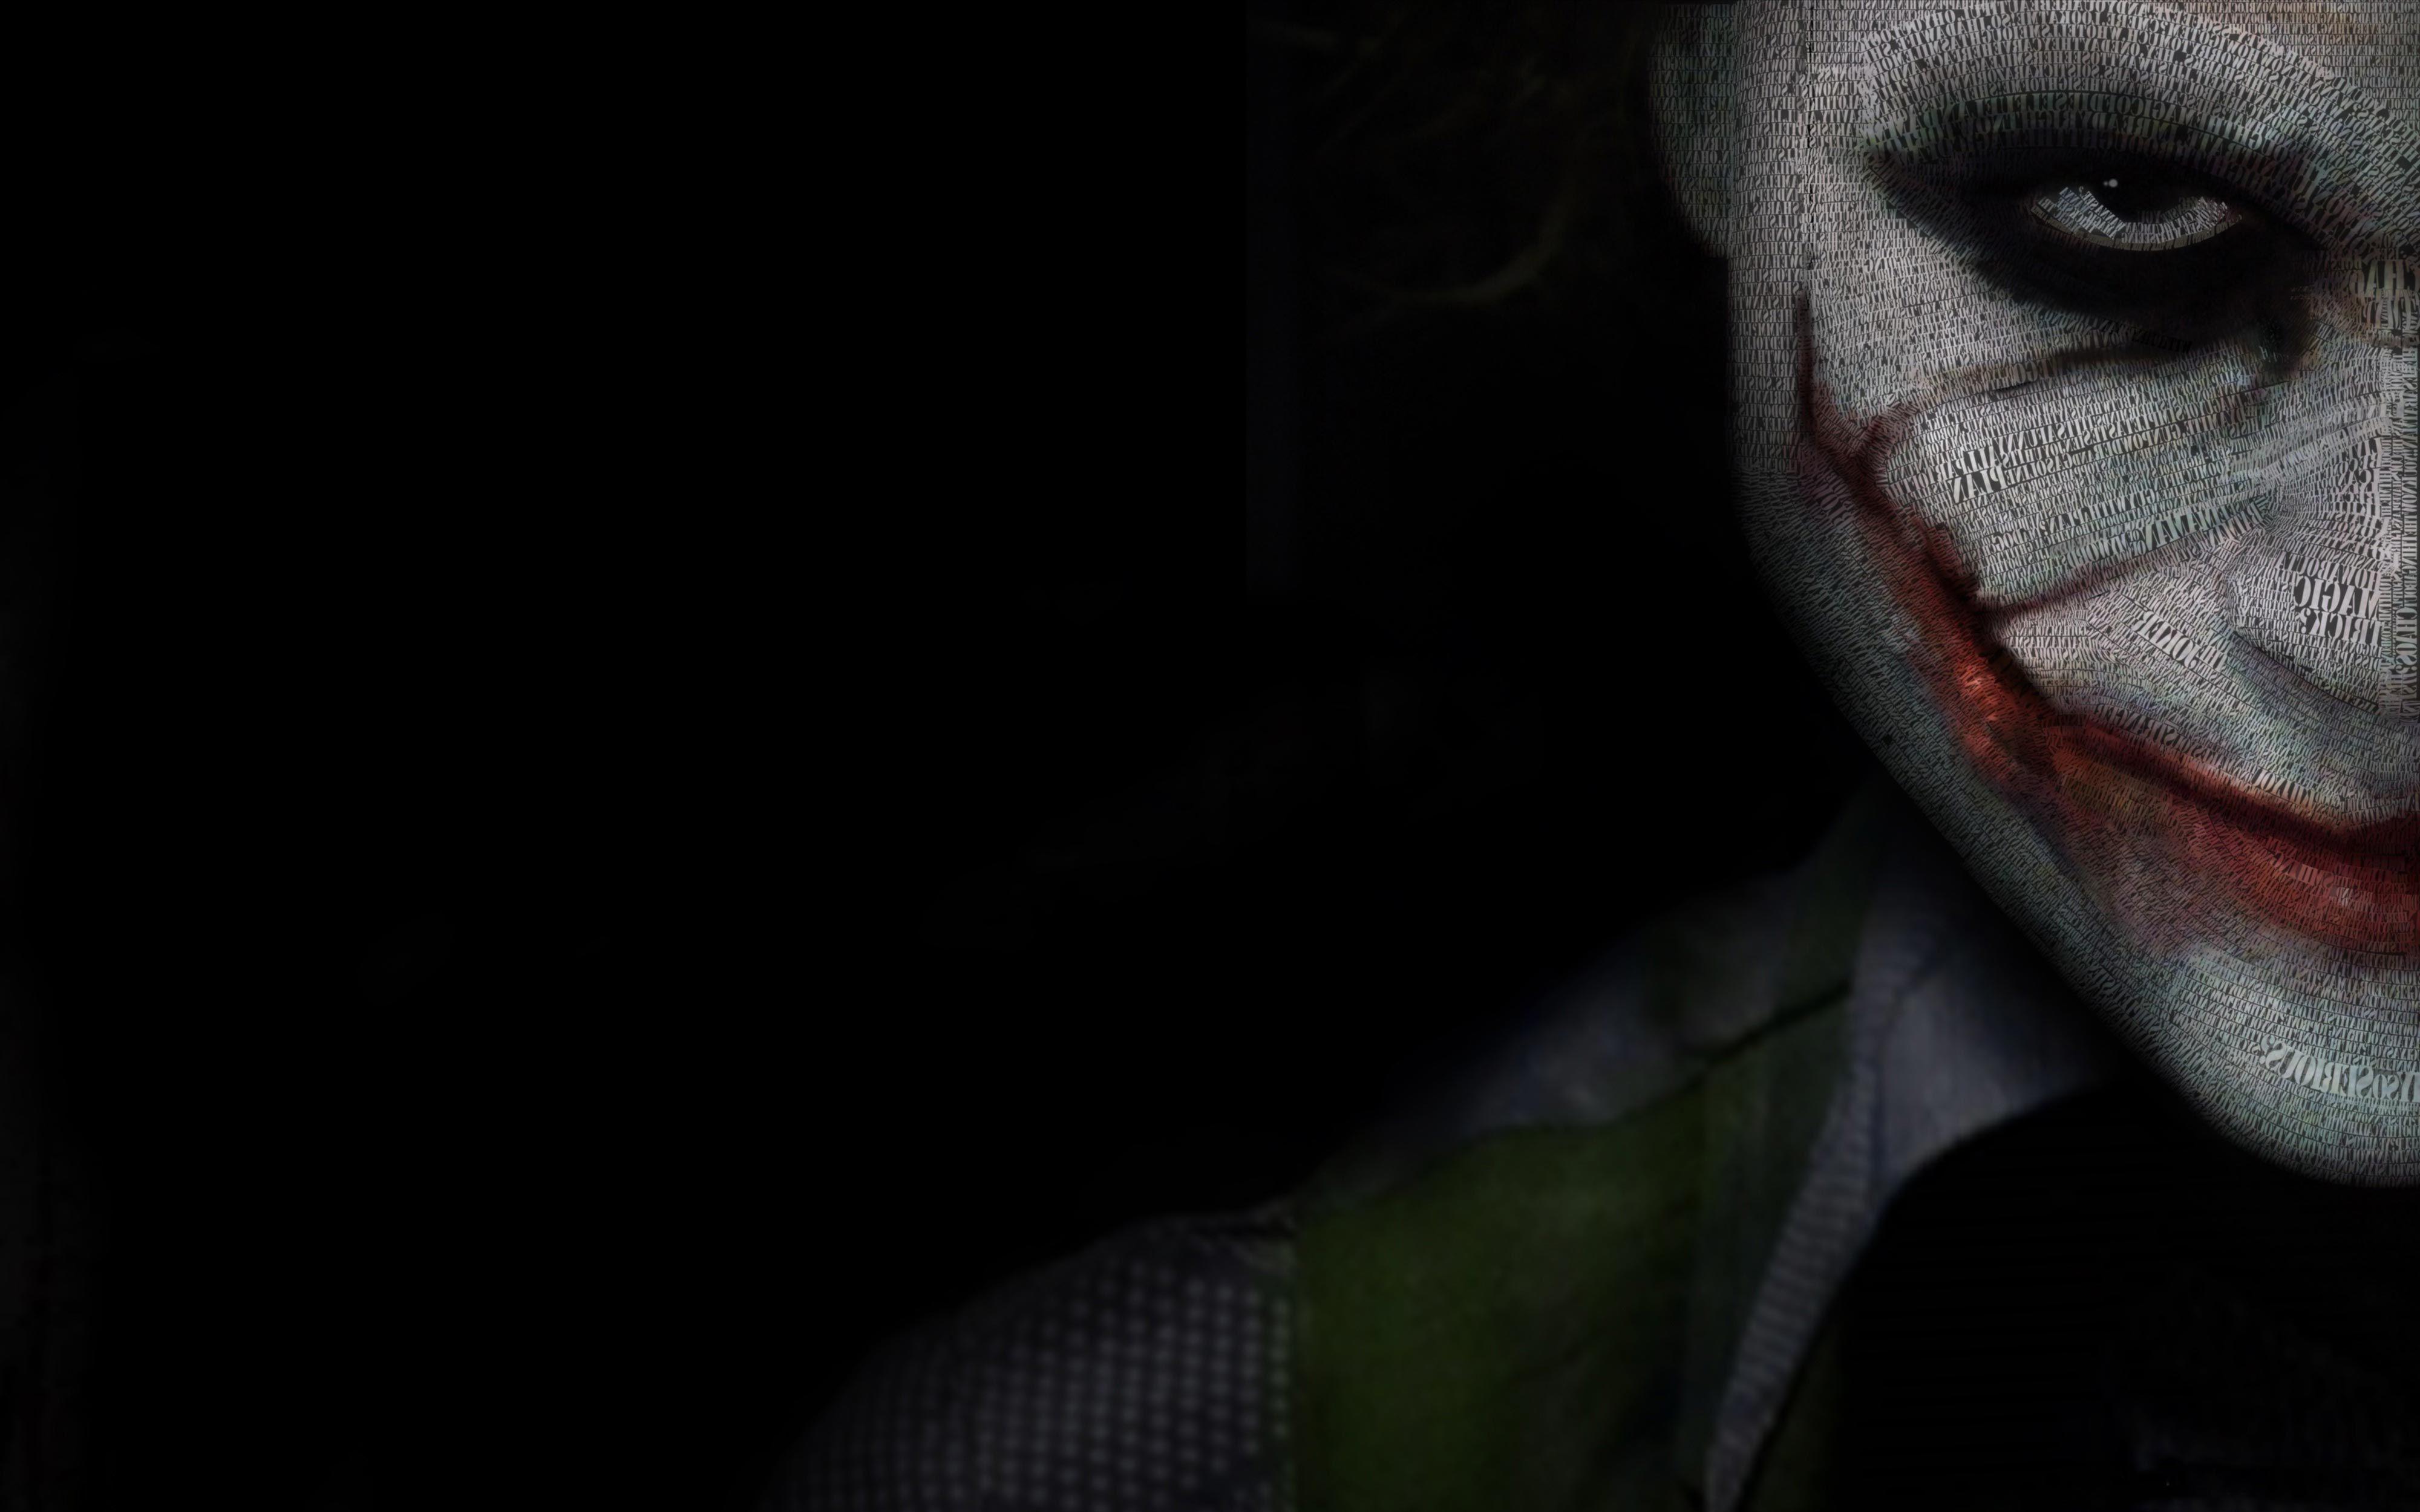 Joker Wallpaper. Joker wallpaper, Joker pics, Joker image